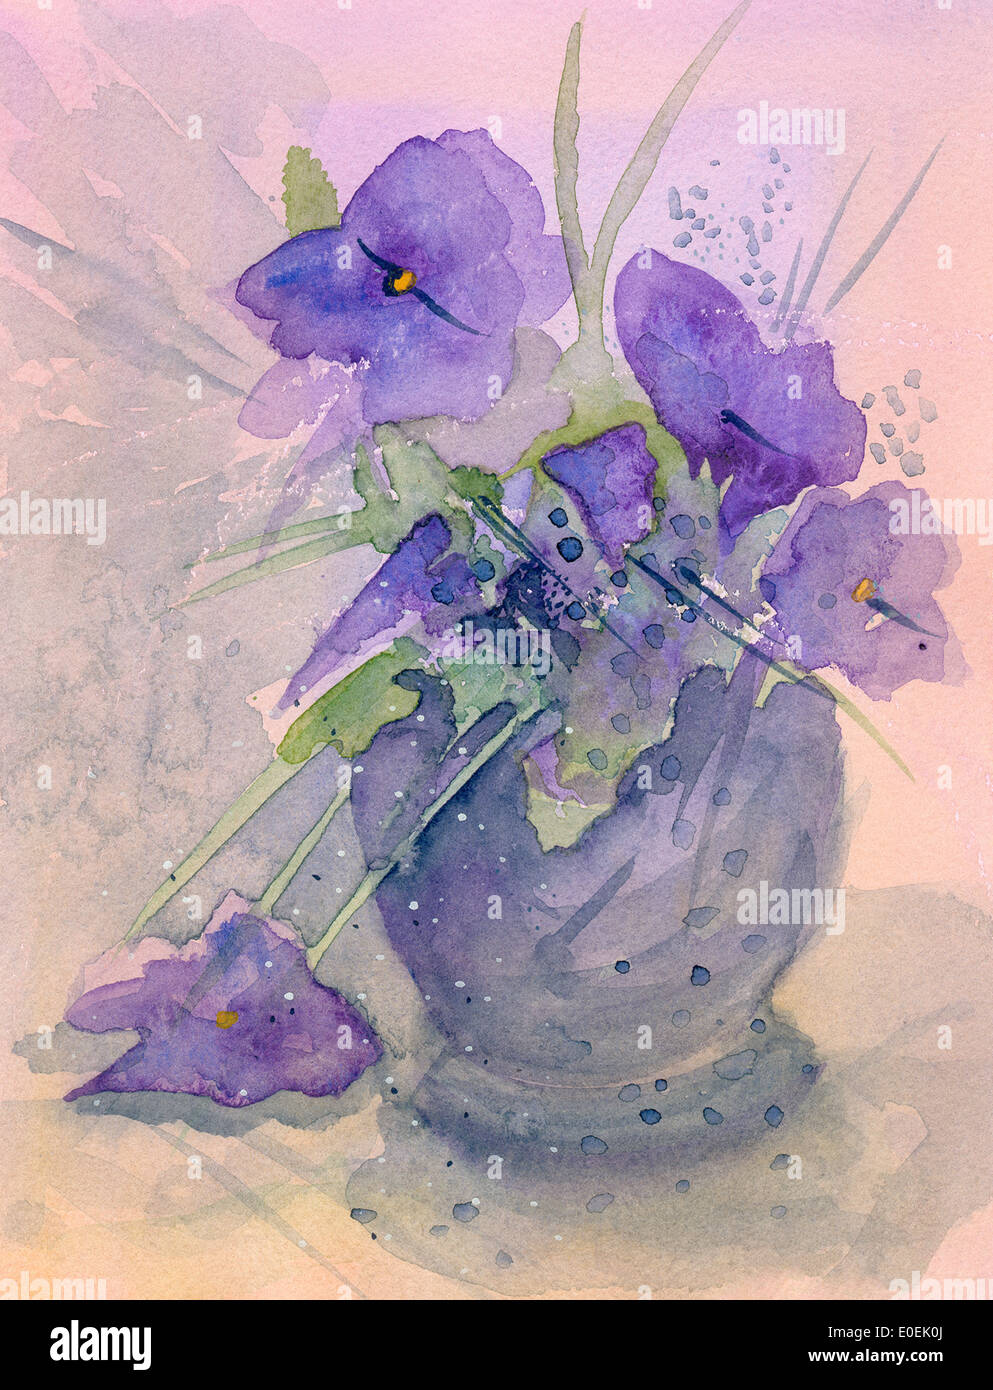 Violette, de l'aquarelle de décoration fait main, style romantique dans des teintes de violet et rose. Banque D'Images